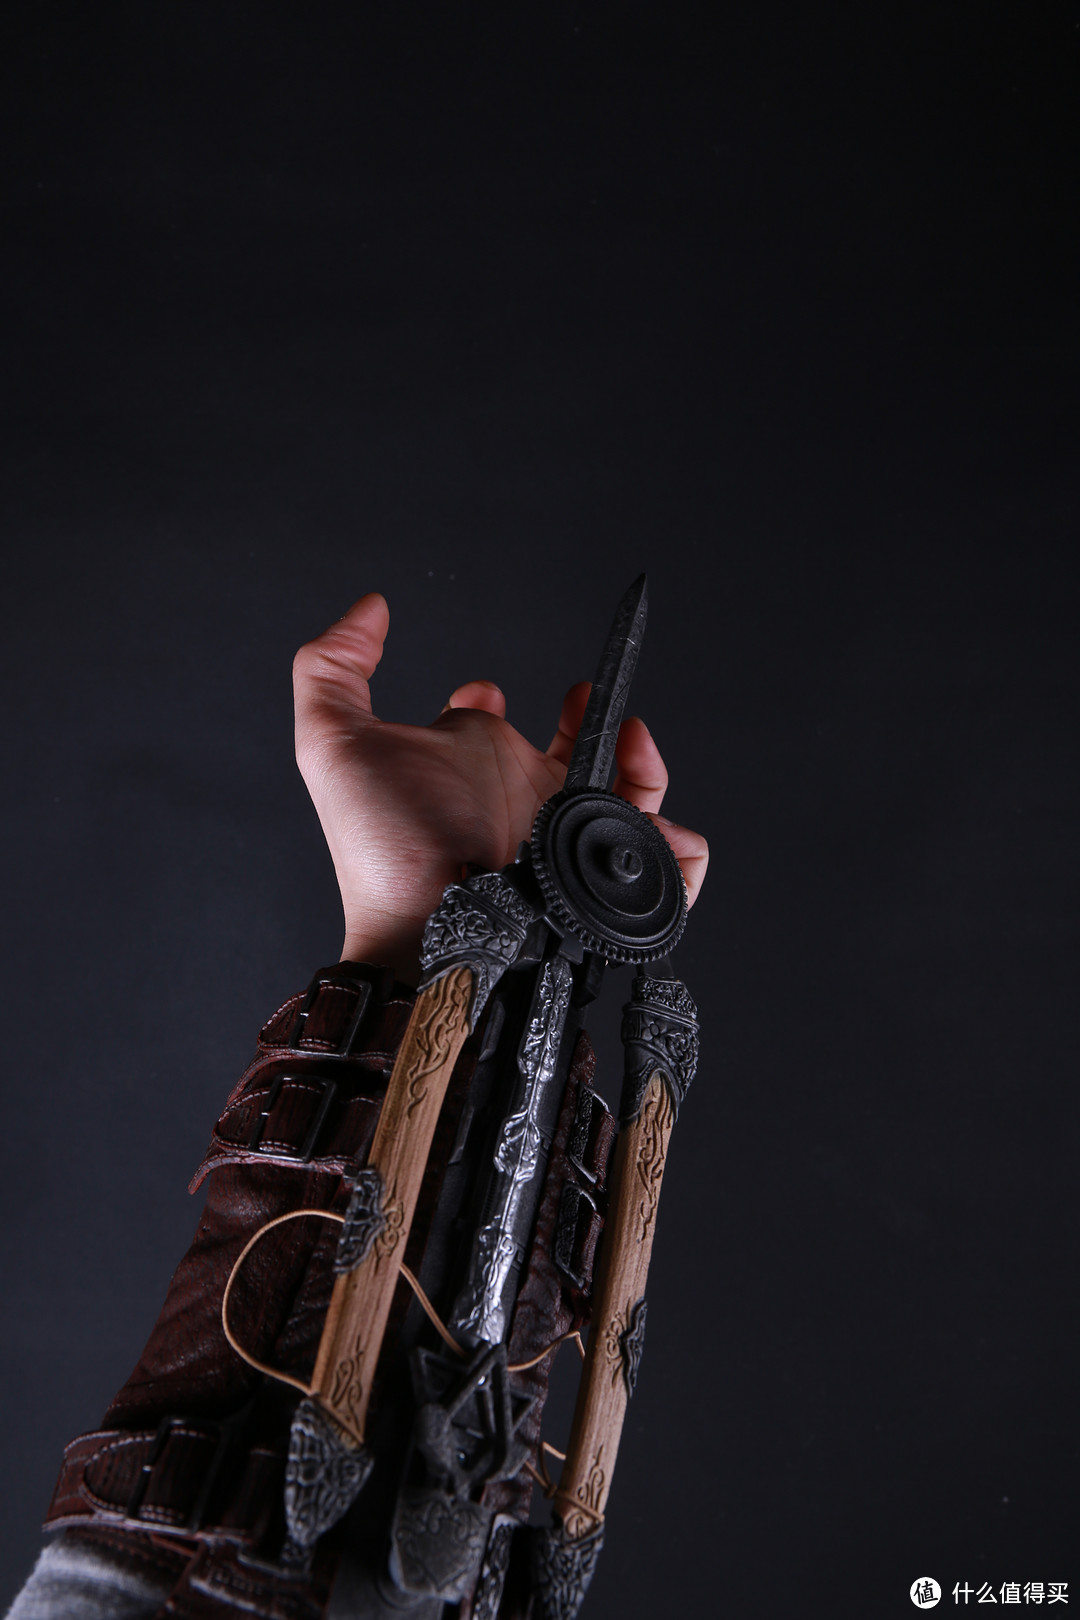 刺客信条幻影剑和袖箭测评和大图详解